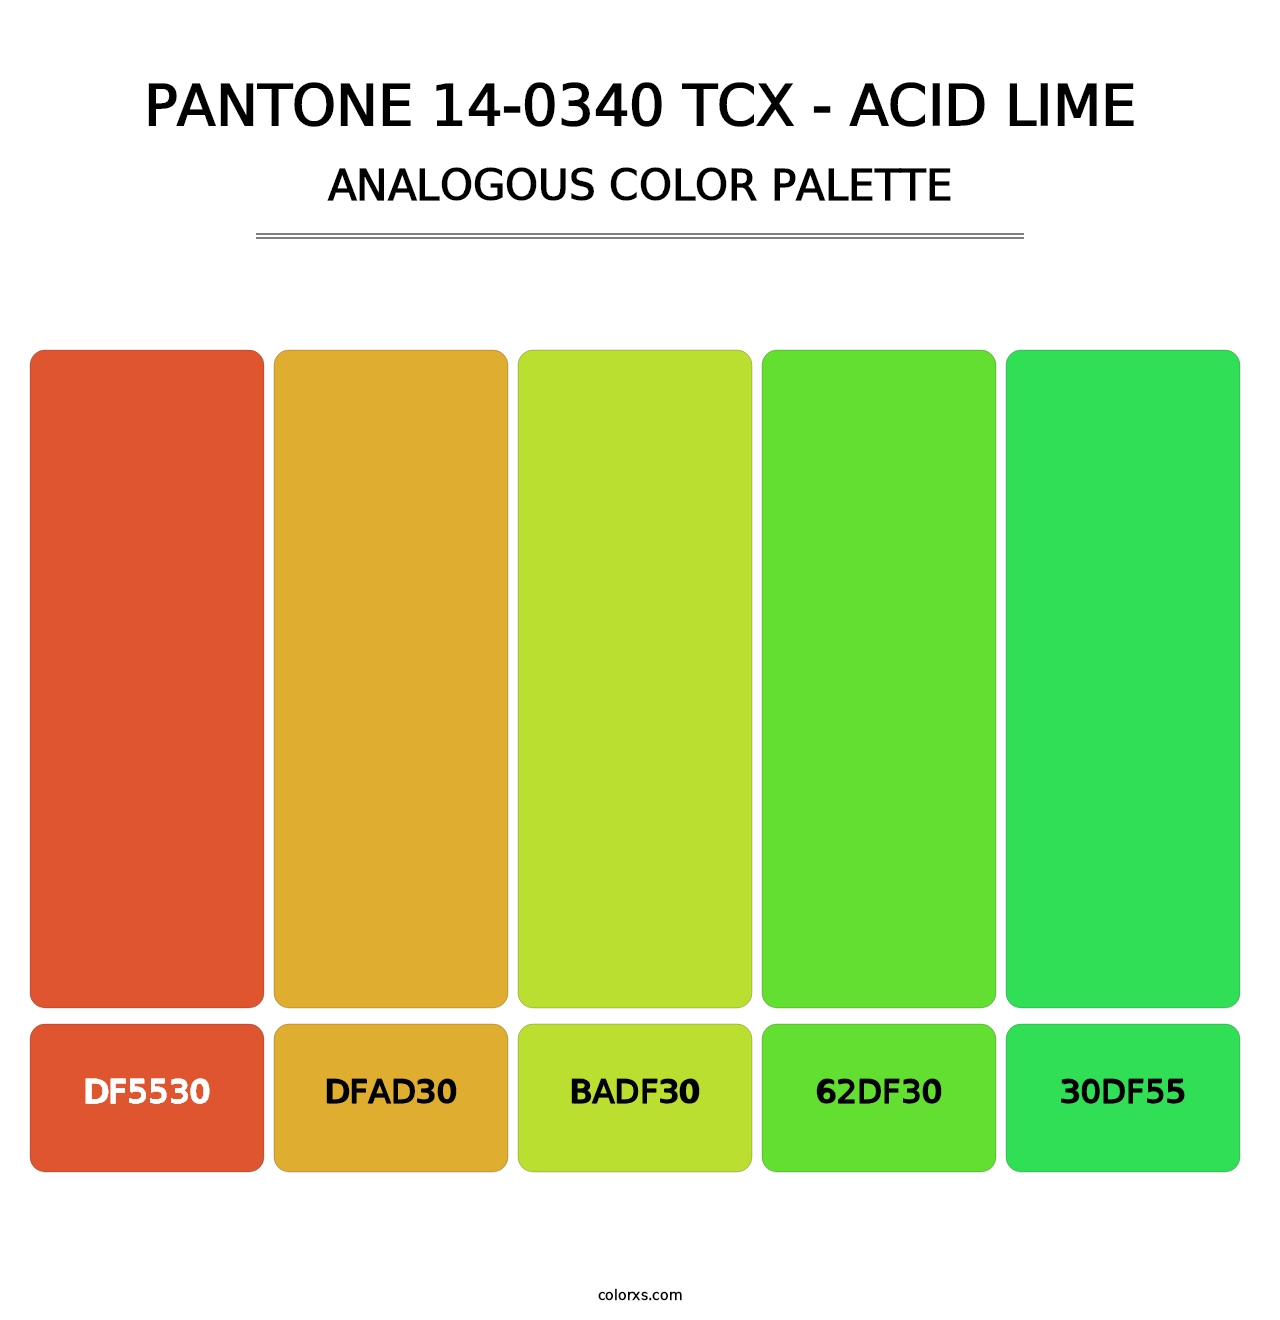 PANTONE 14-0340 TCX - Acid Lime - Analogous Color Palette